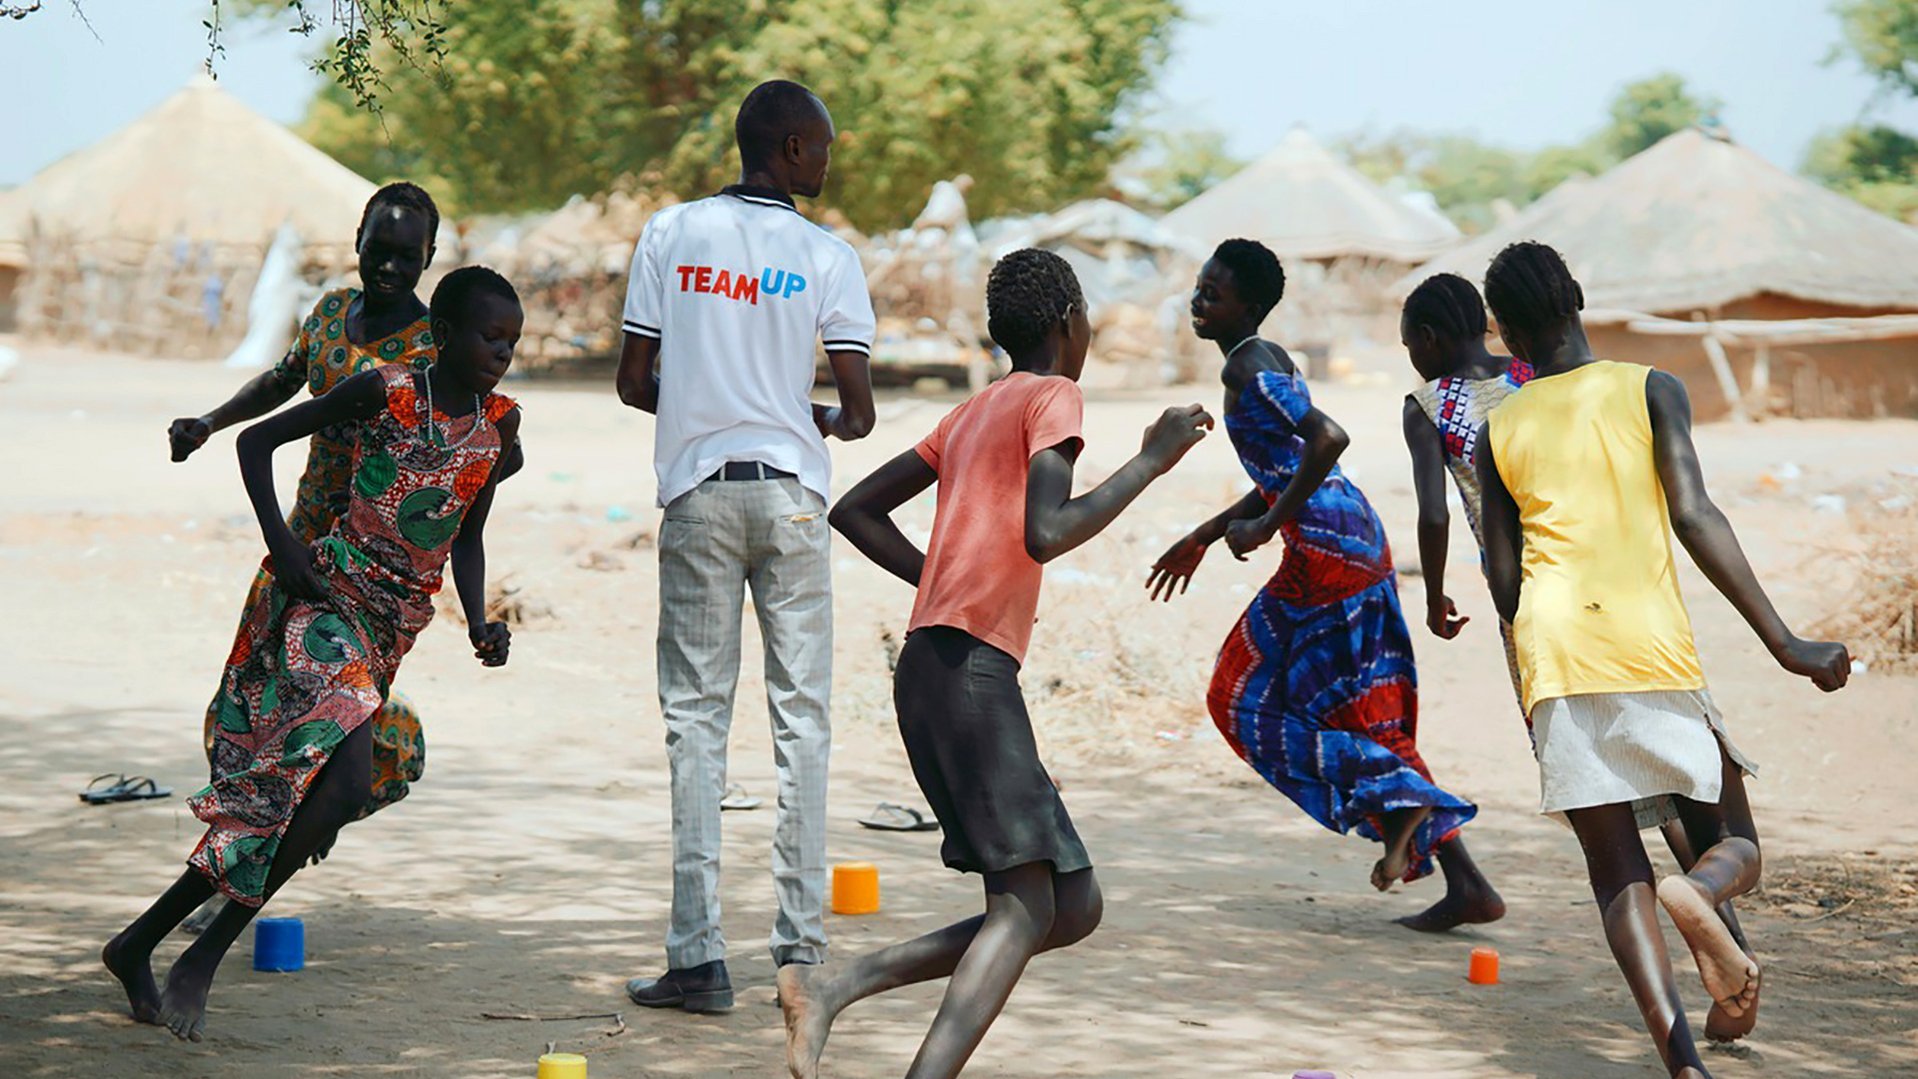 220301_War-Child_TeamUp_South-Sudan_6.jpg.1918x1080_q85_upscale